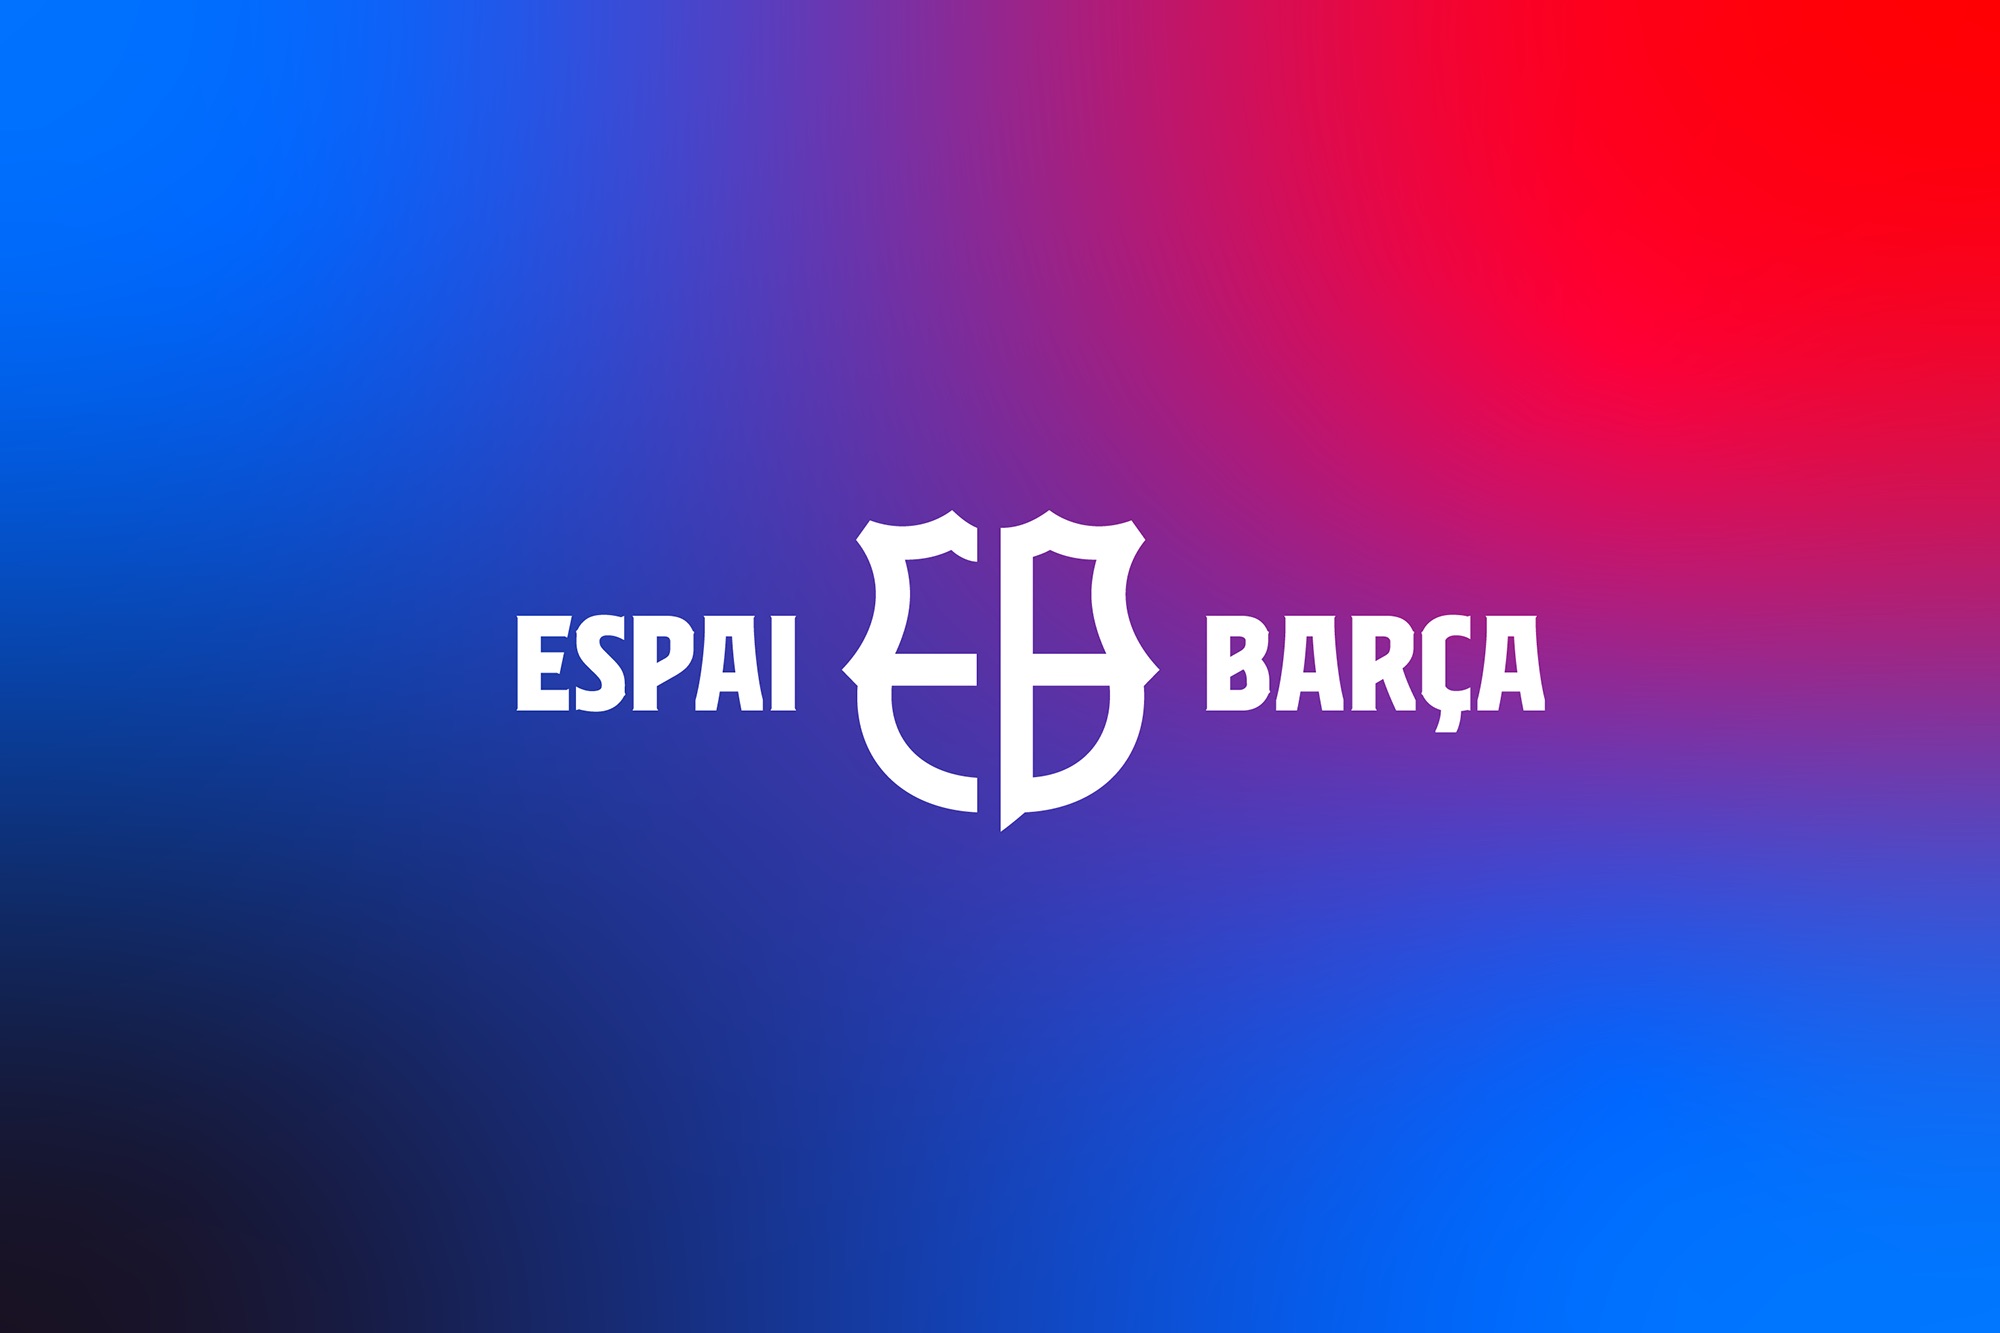 Espai Barça’s Strategic Revitalization